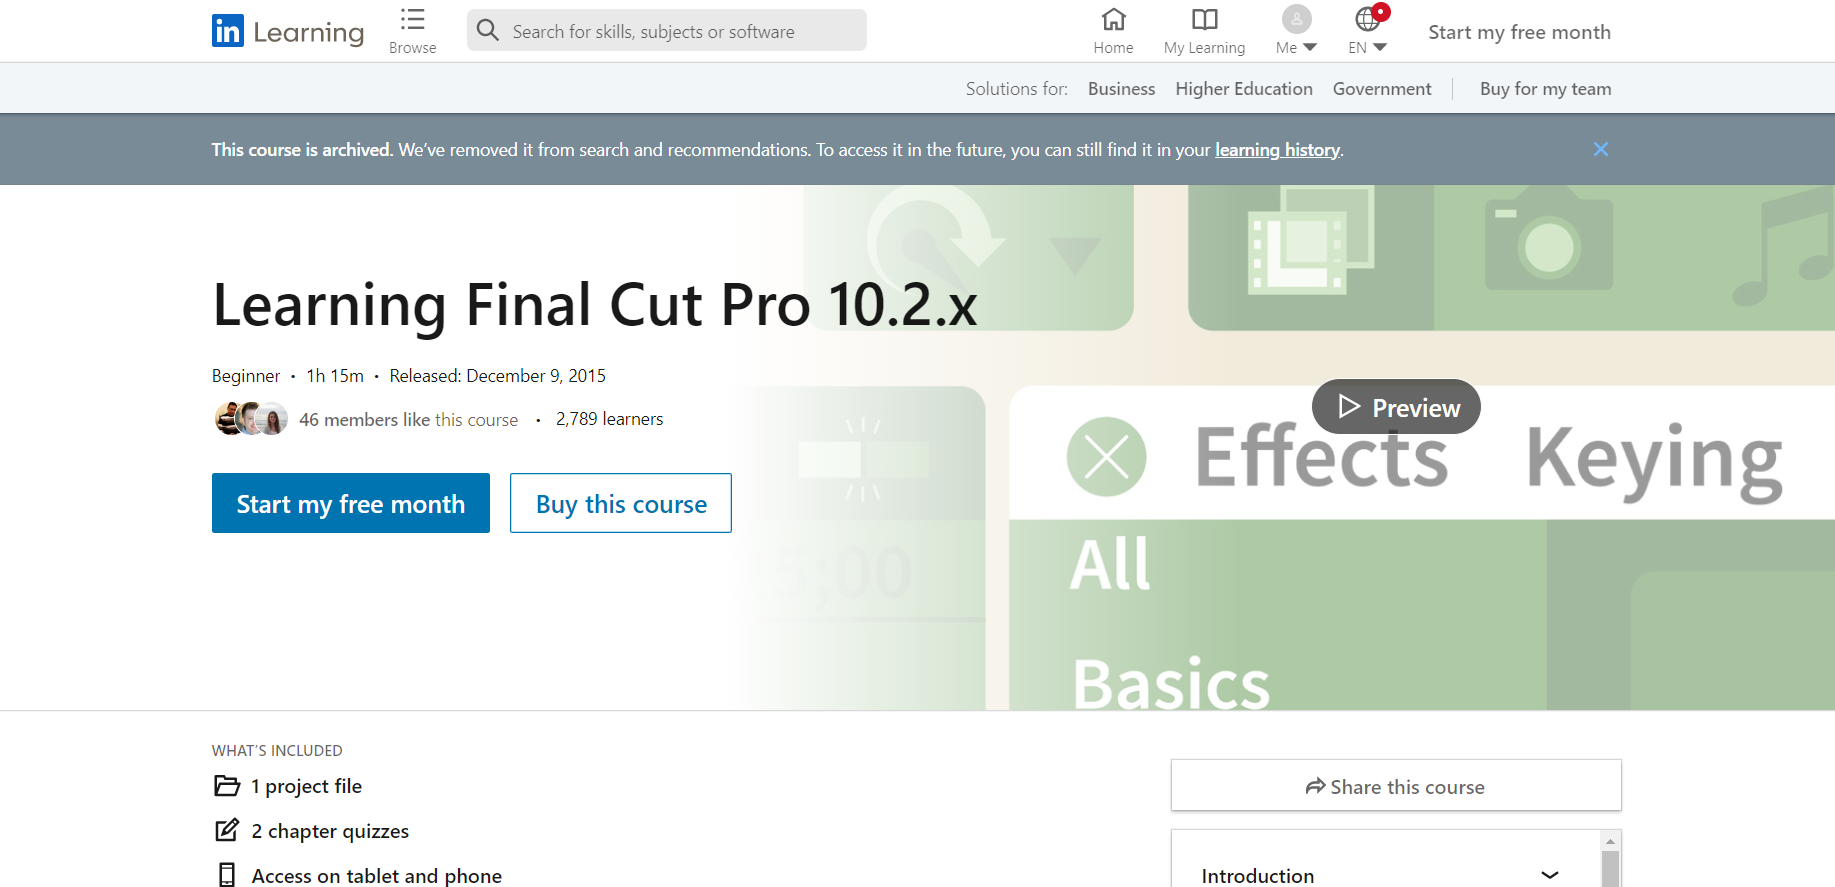 Learning Final Cut Pro